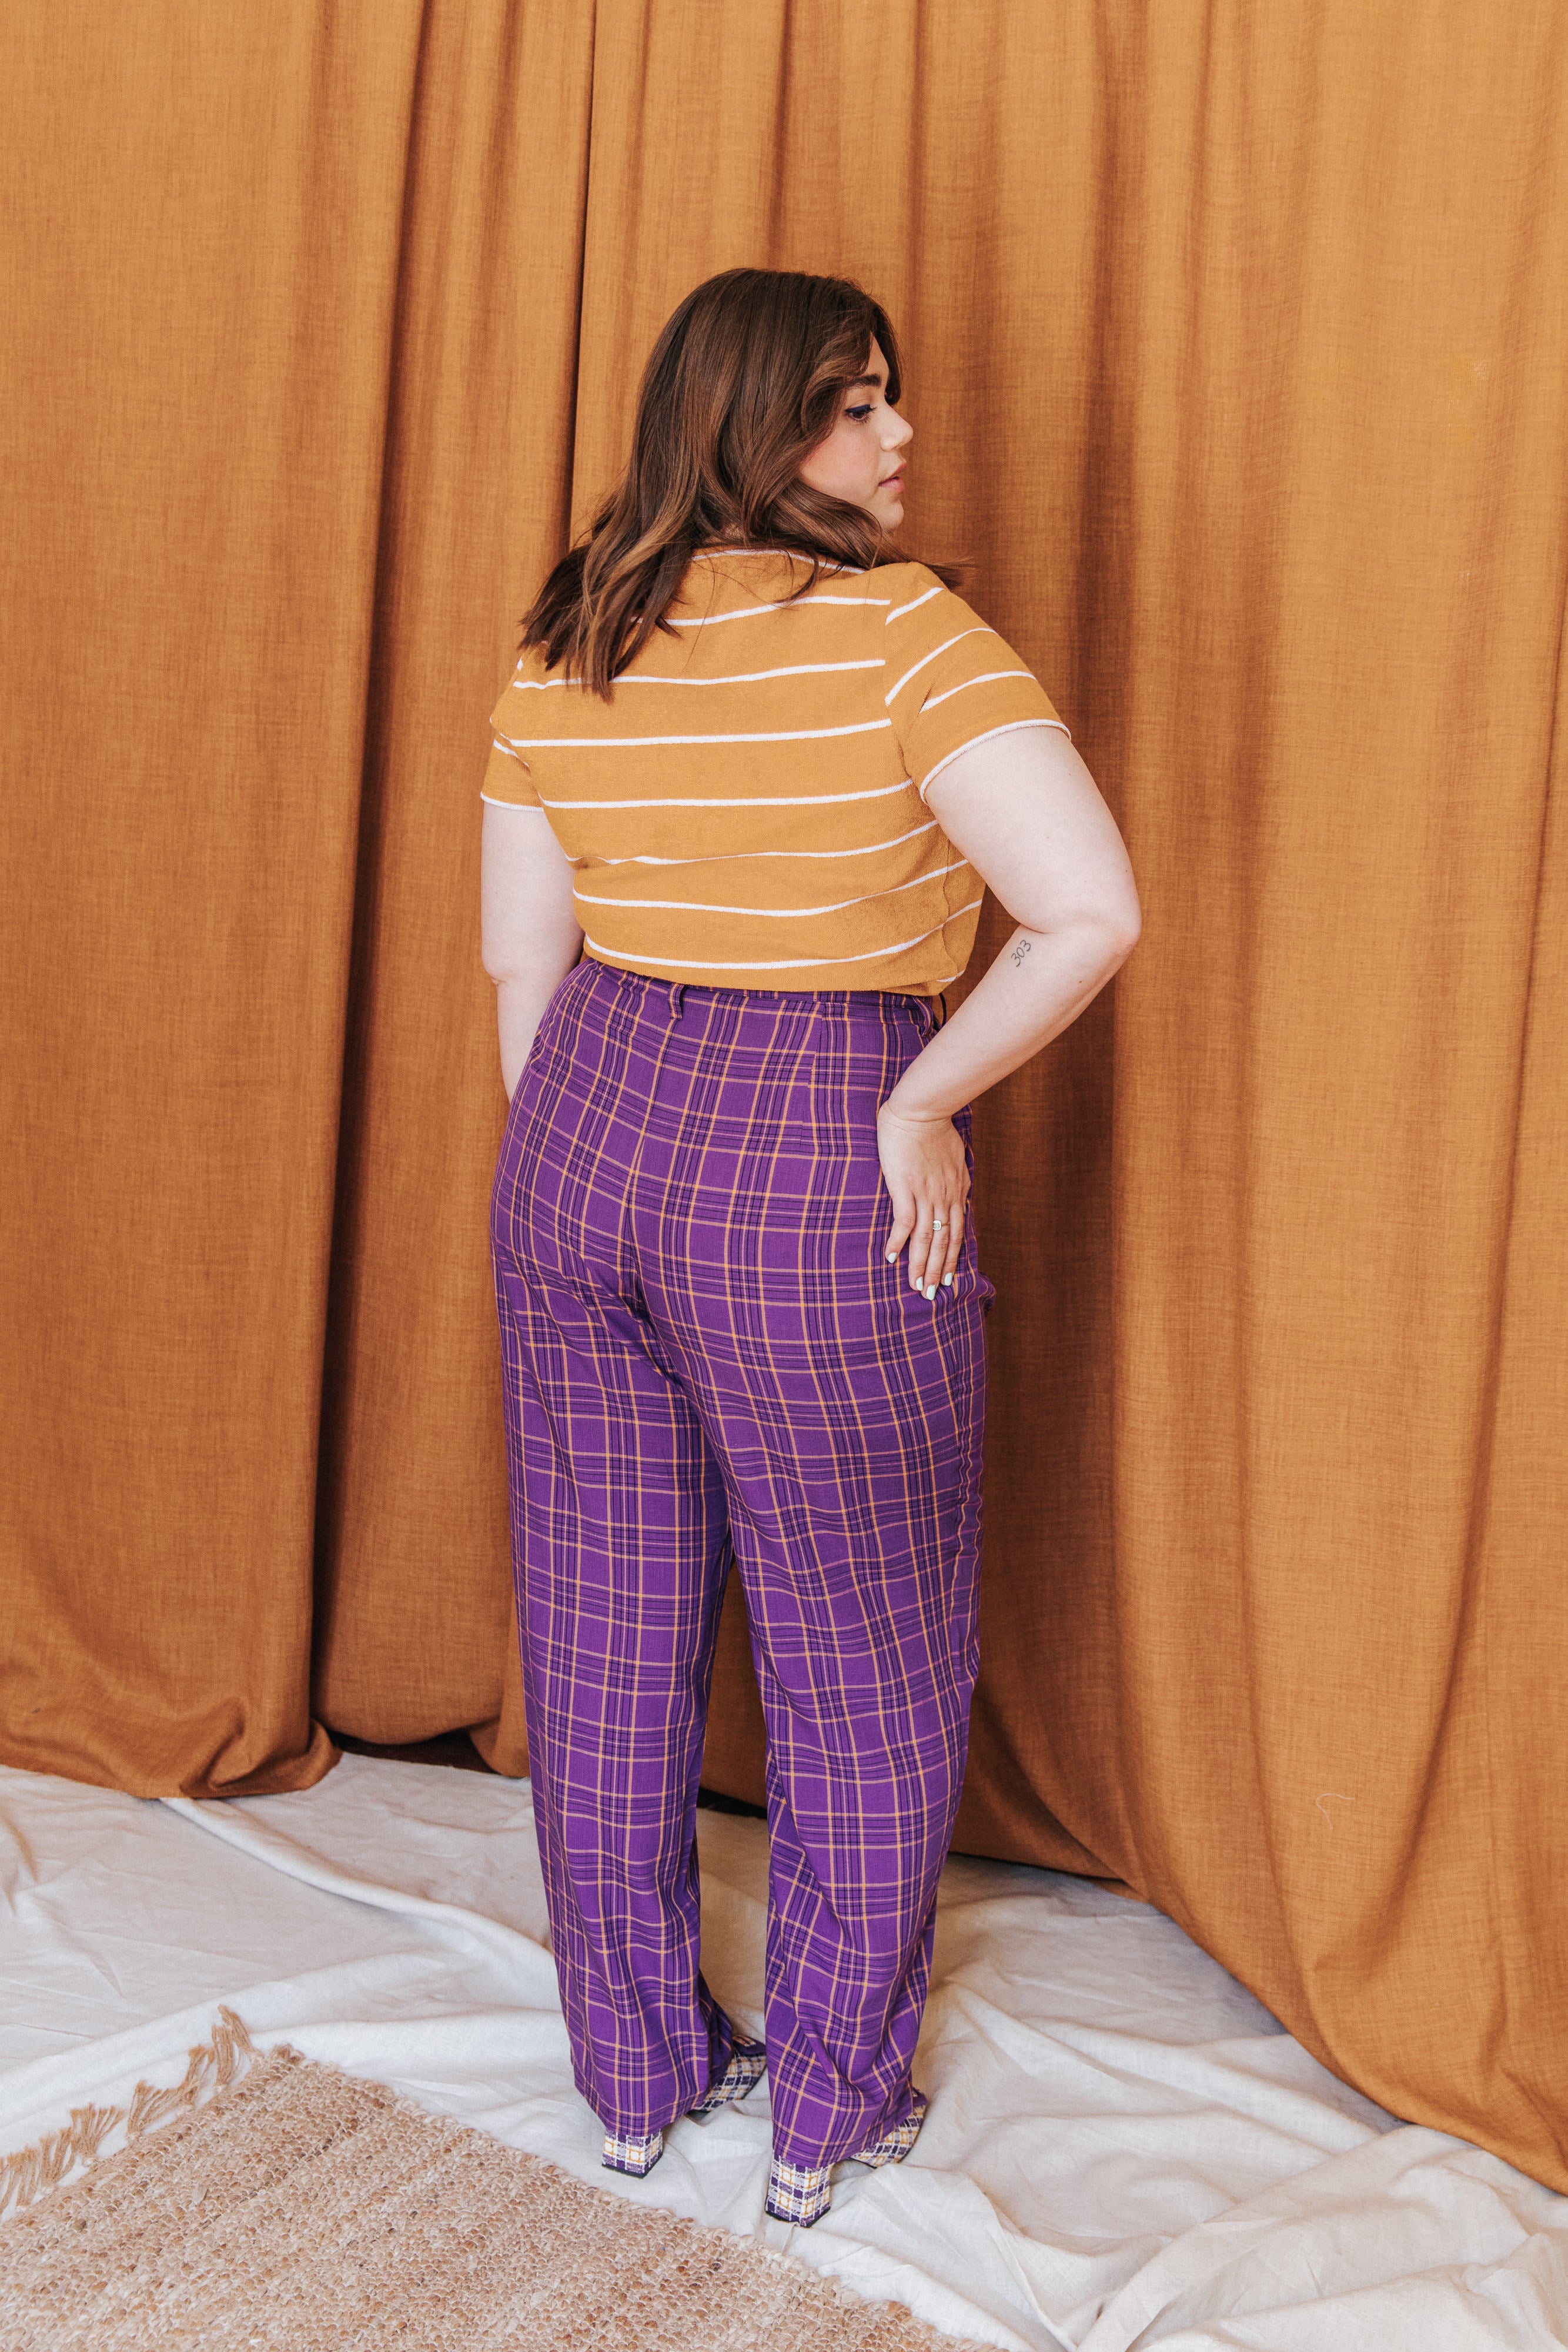 Just Love Women Plaid Pajama Pants Sleepwear (Purple Plaid, Medium) -  Walmart.com